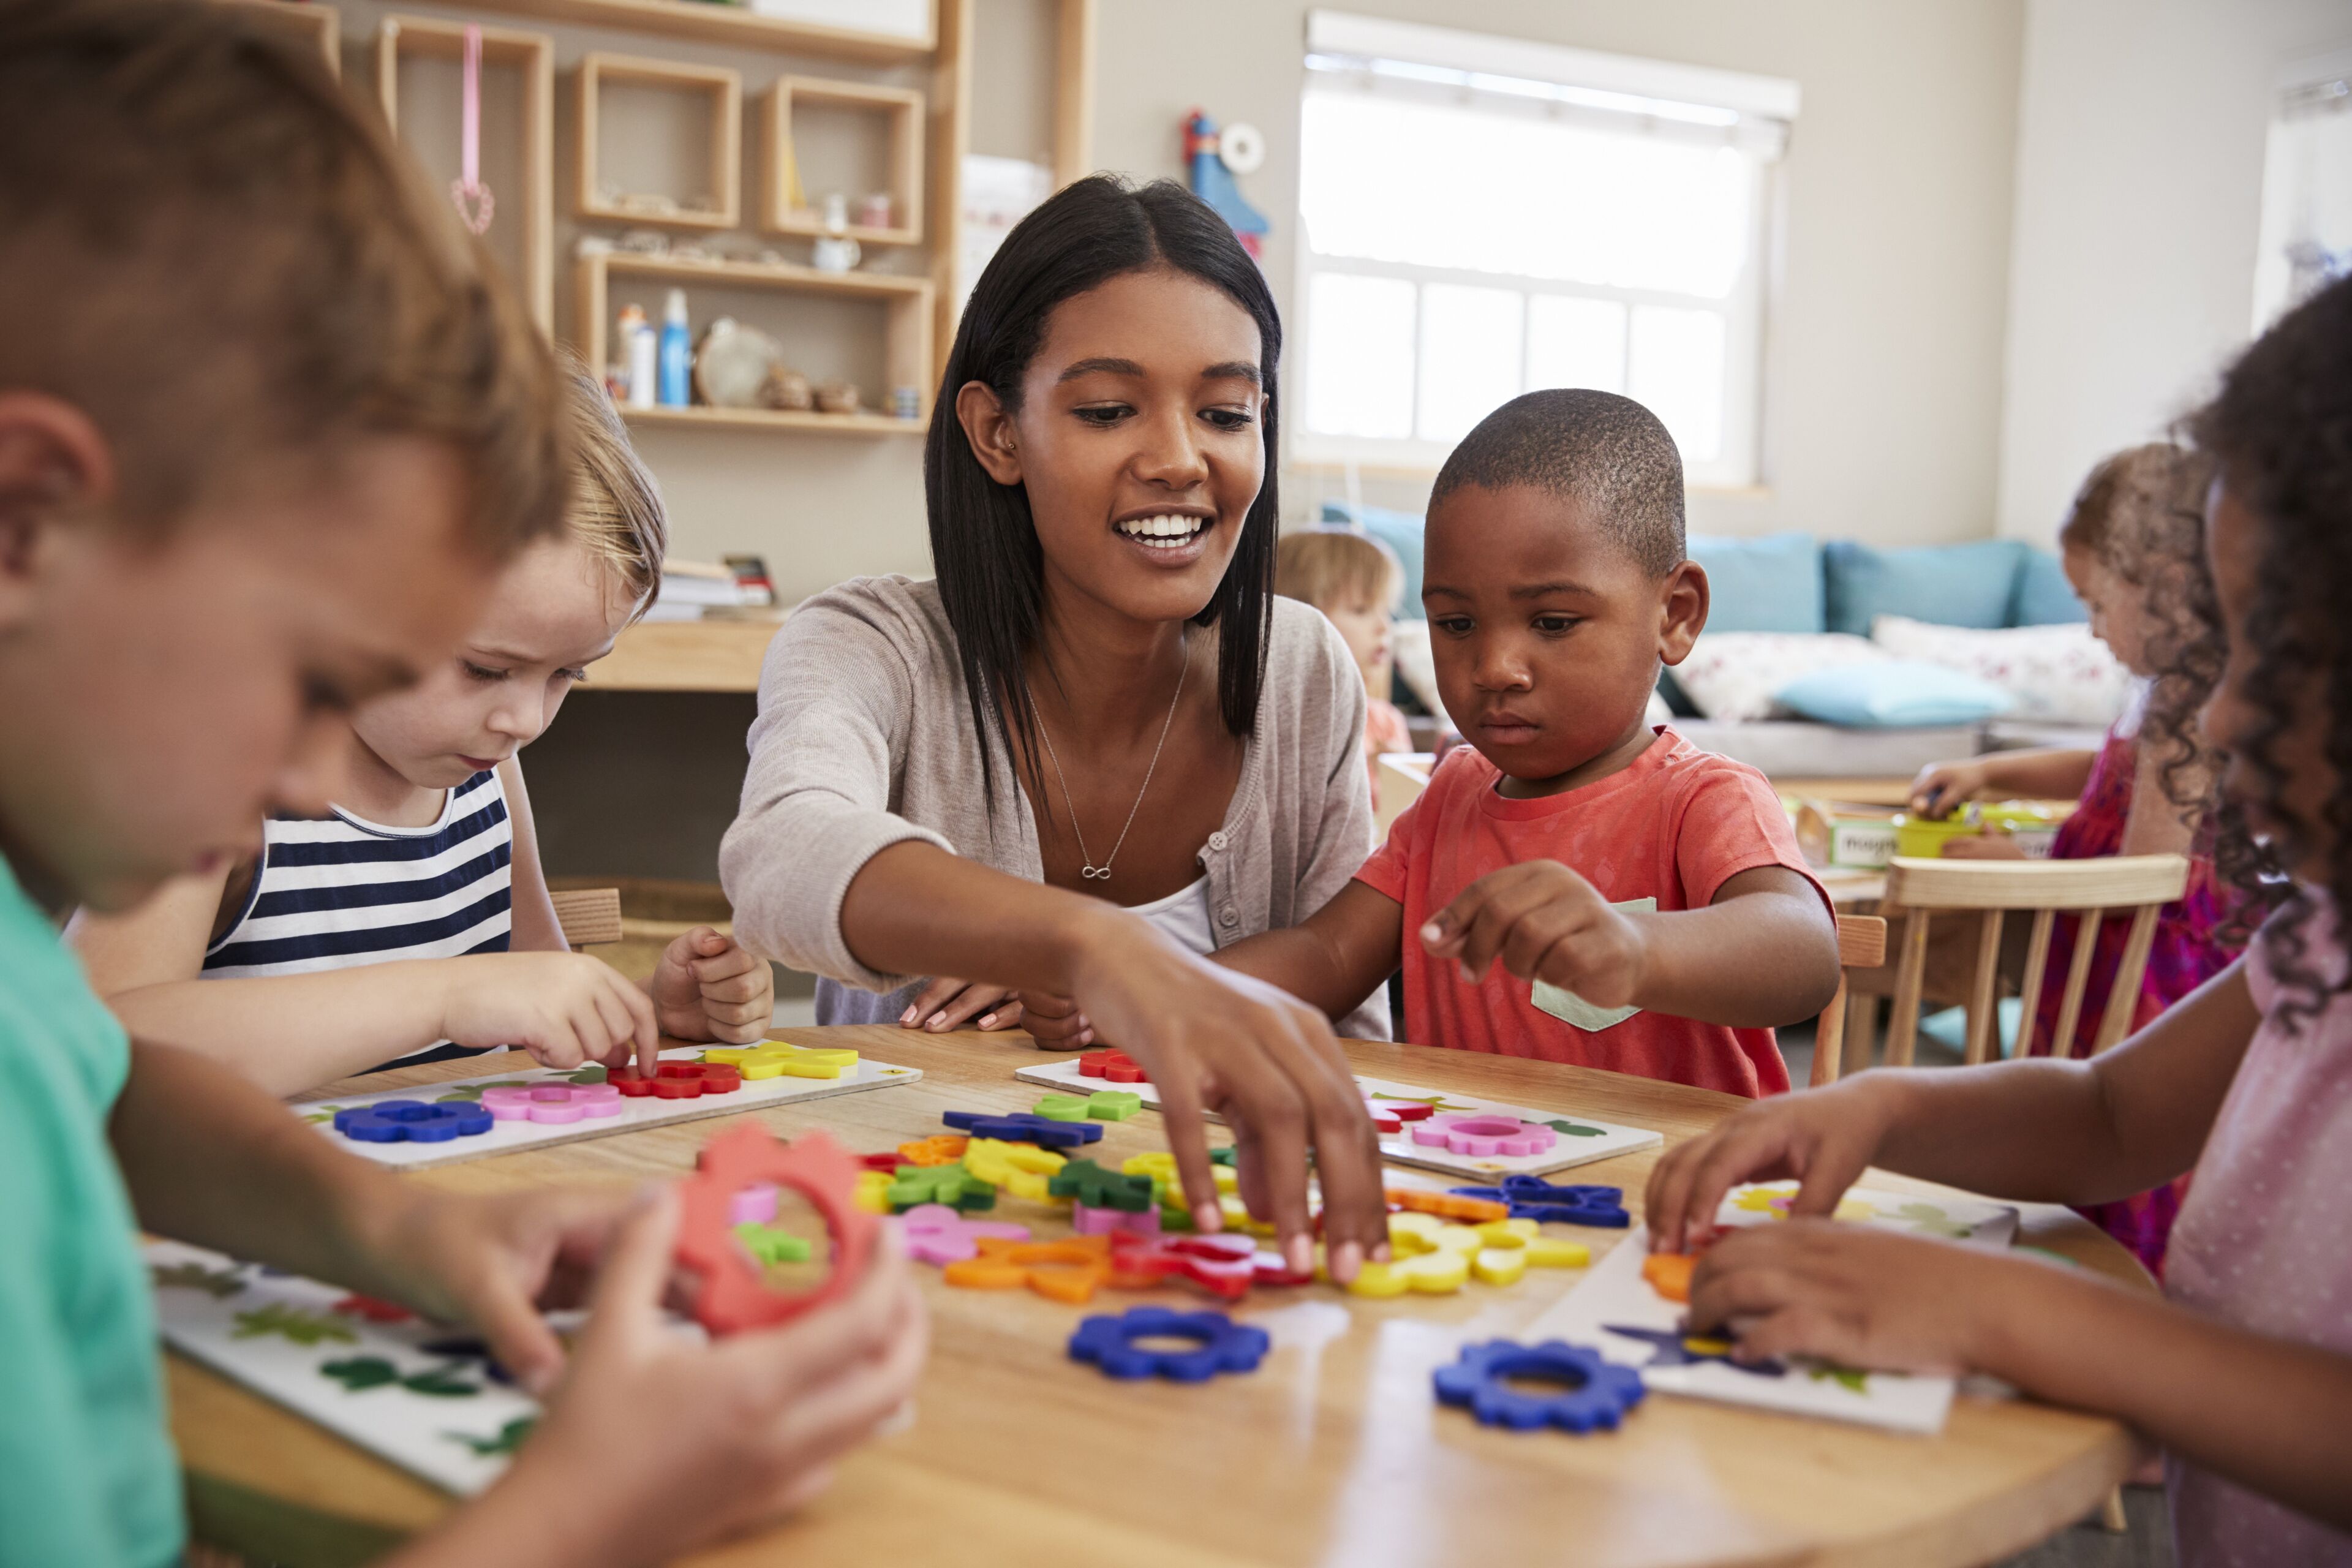 ImageUna maestra se involucra con niños pequeños en una mesa, guiándolos en una lección lúdica sobre formas y colores usando juguetes educativos.